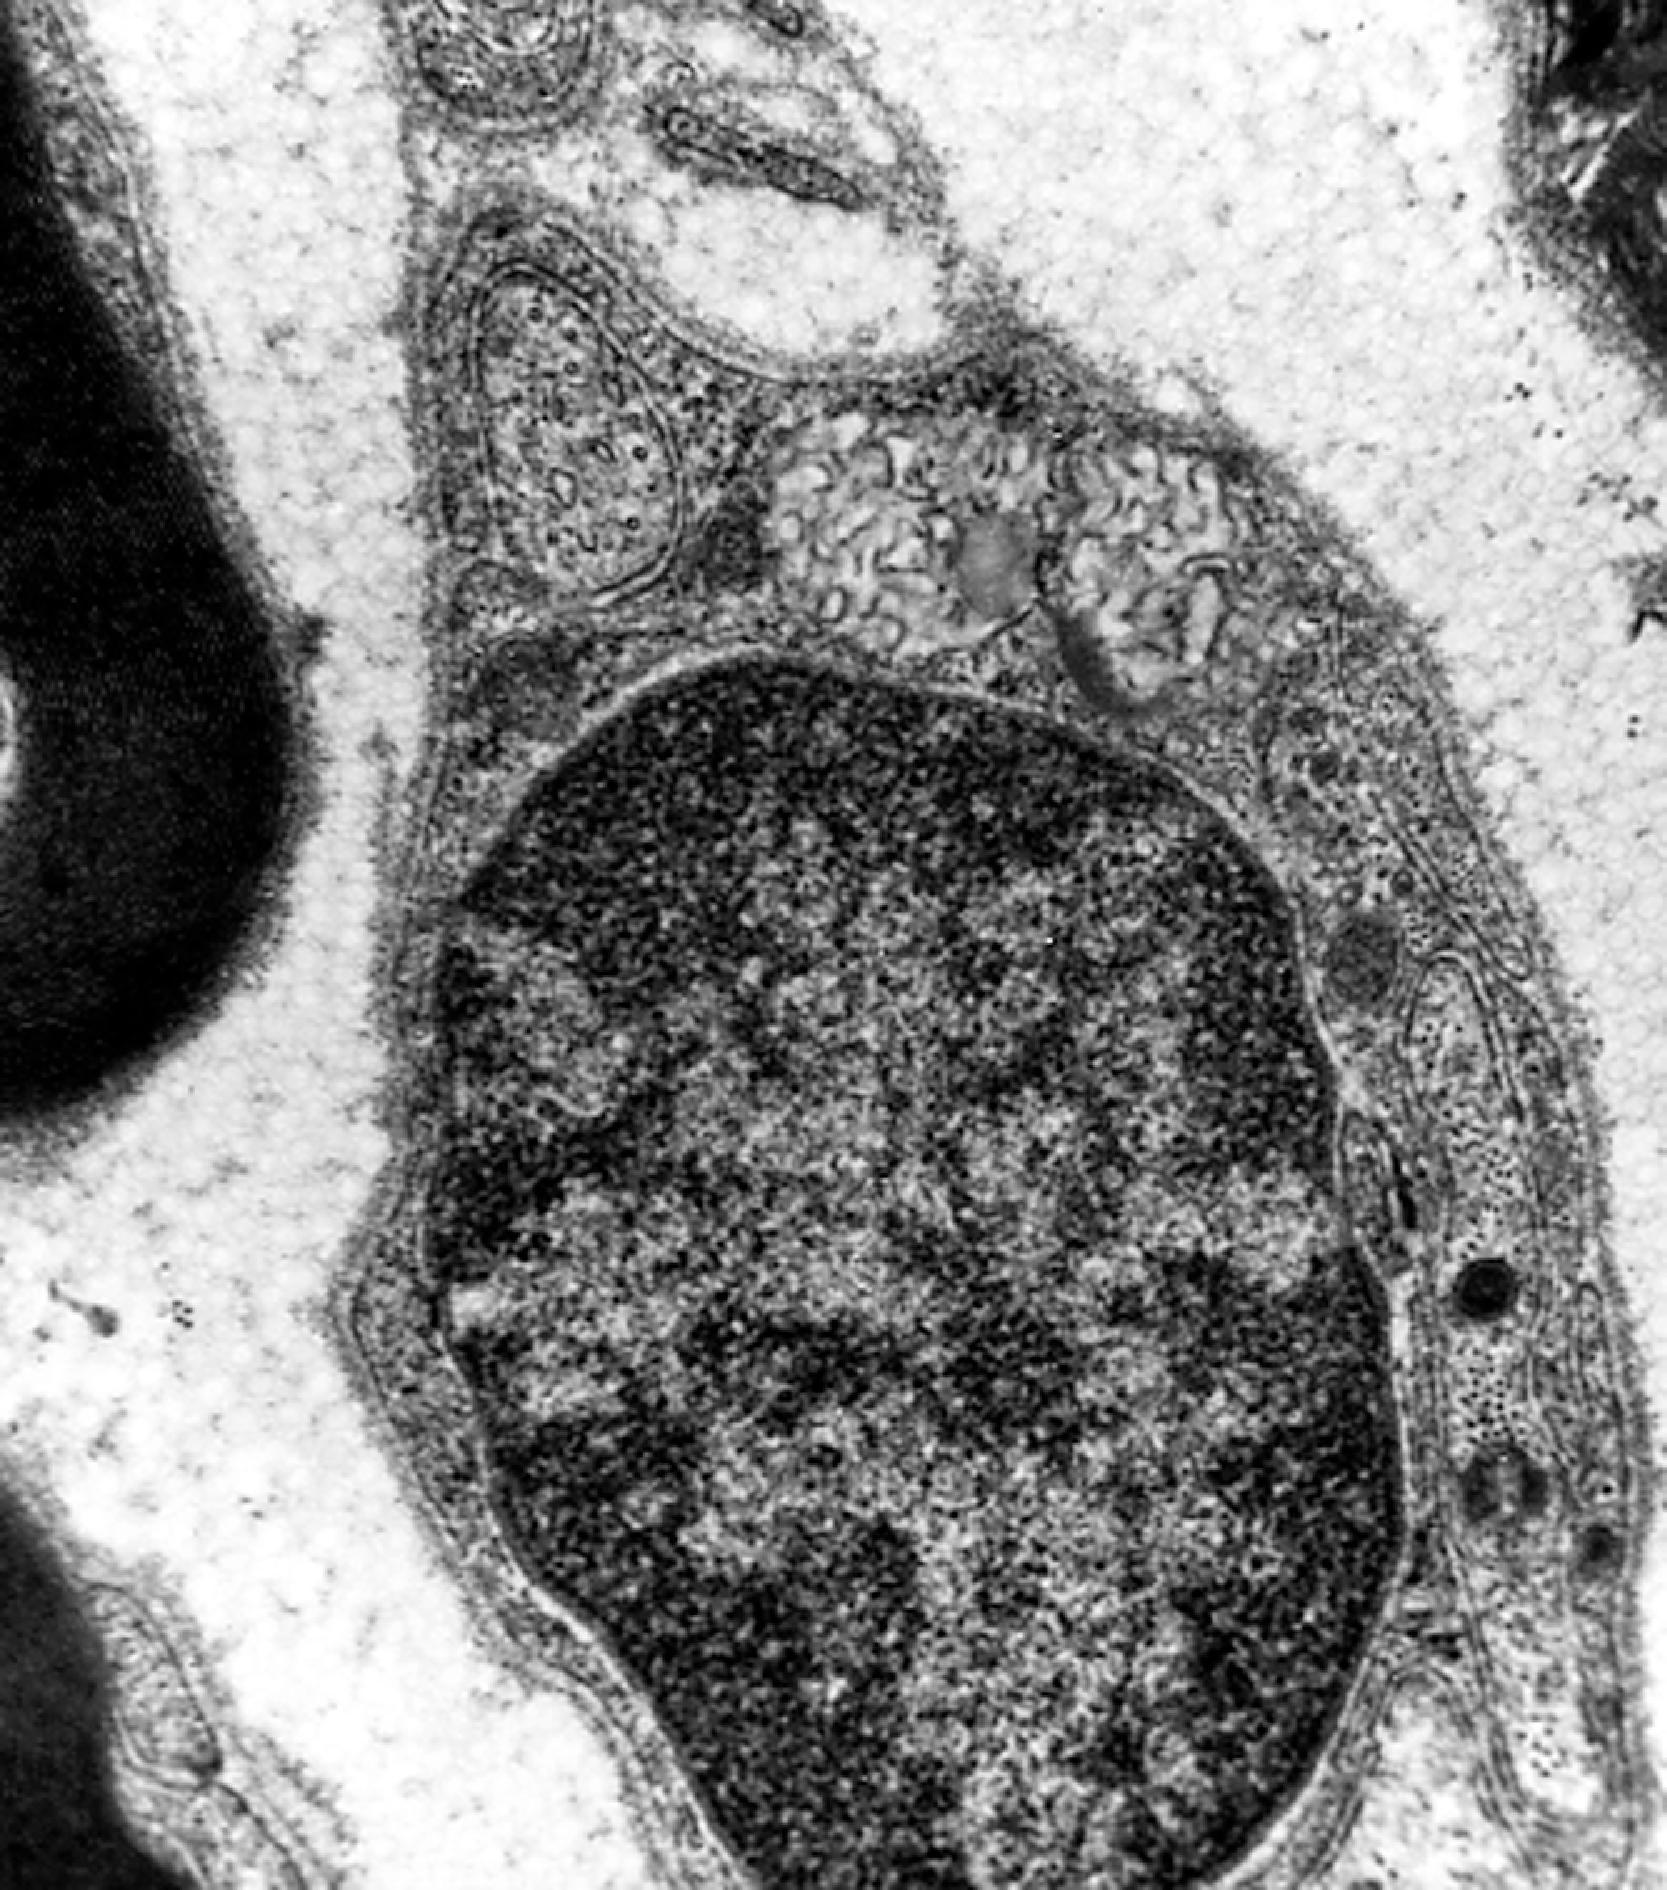 FIGure 8.33, Curvilinear bodies in a Schwann cell in late infantile neuronal ceroid lipofuscinosis.